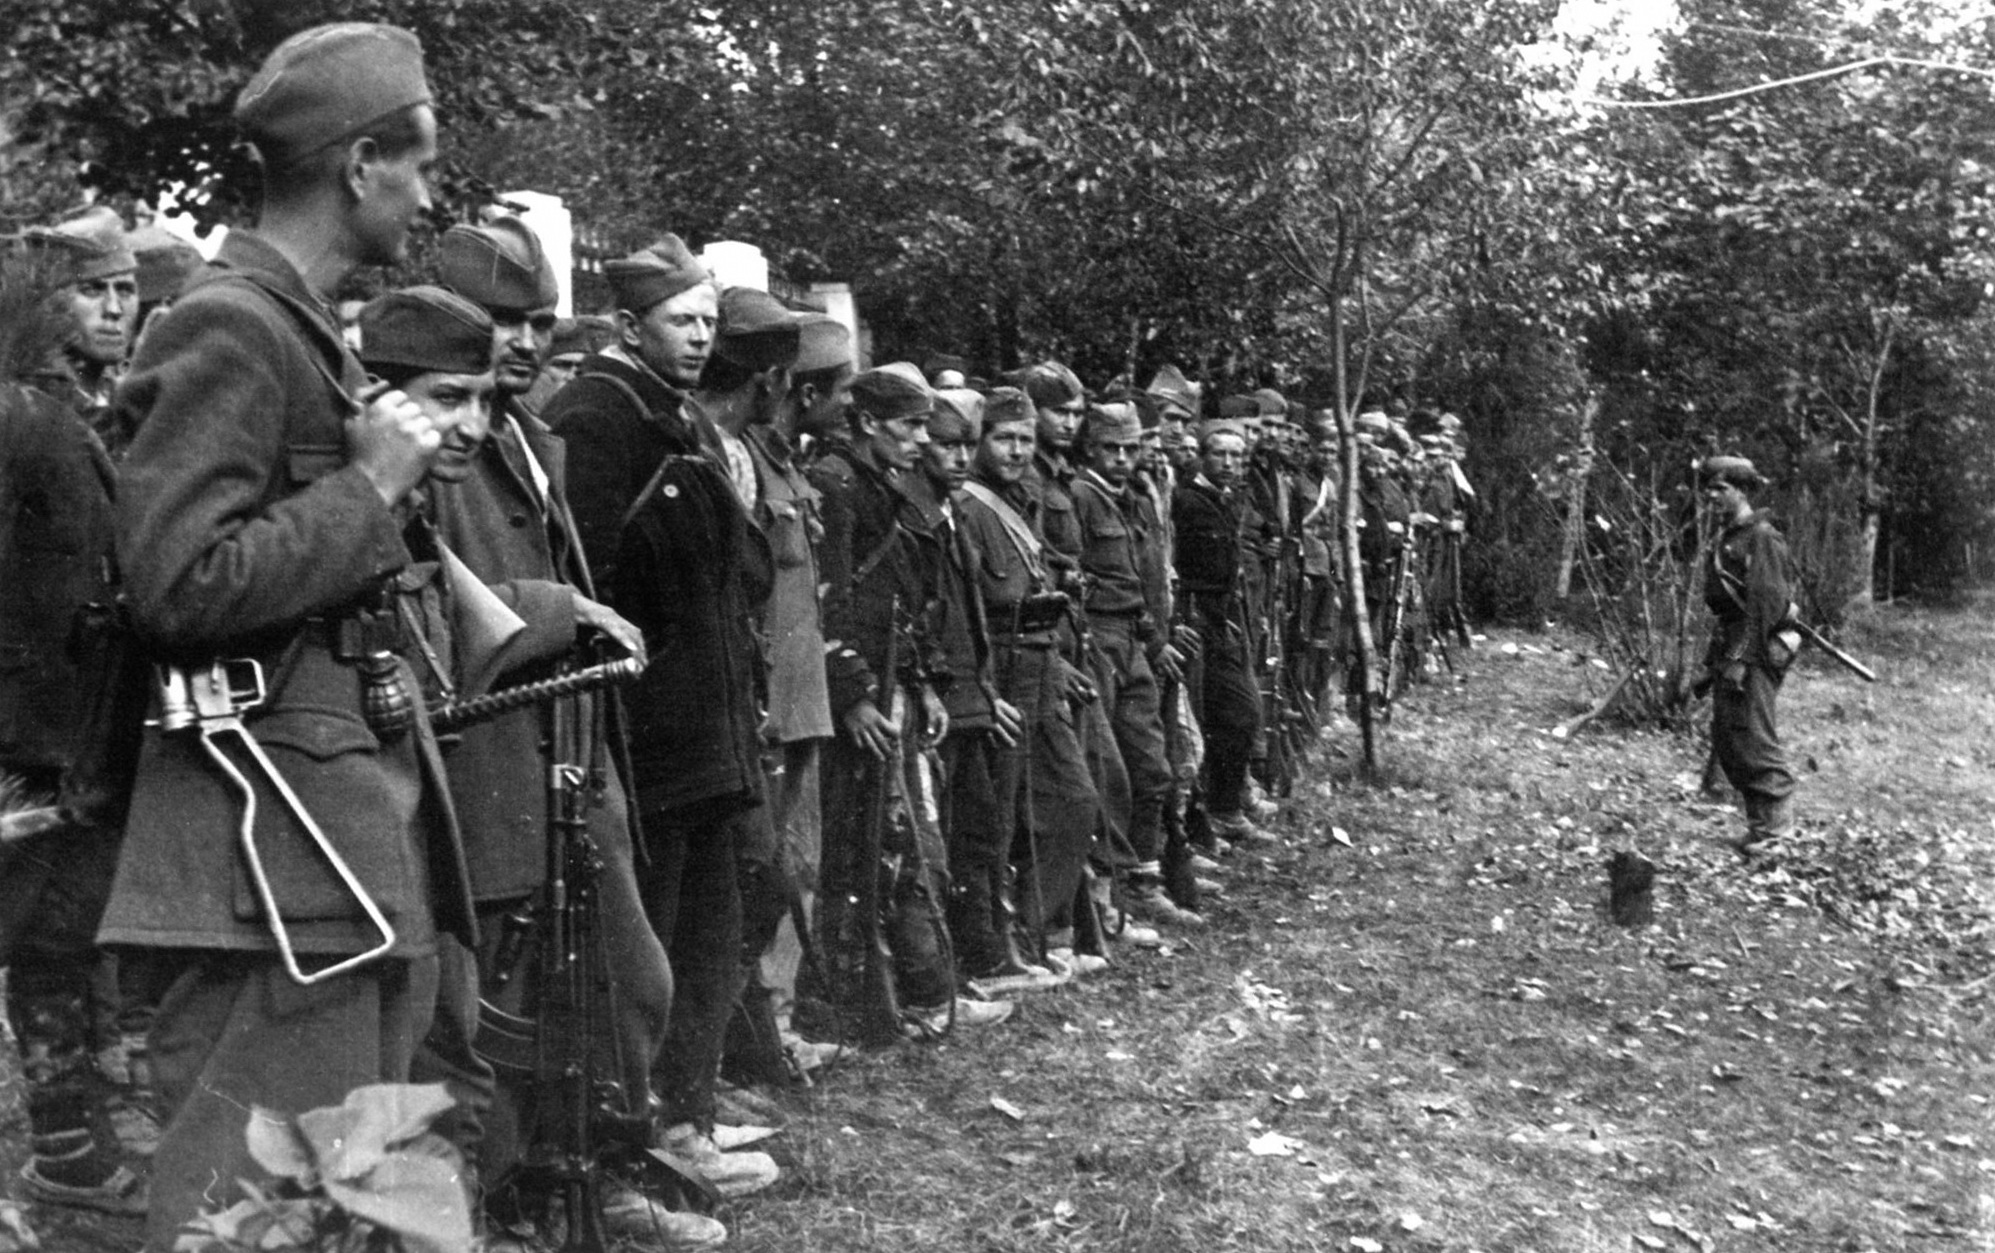 Risultato immagini per partigiani jugoslavi immagini